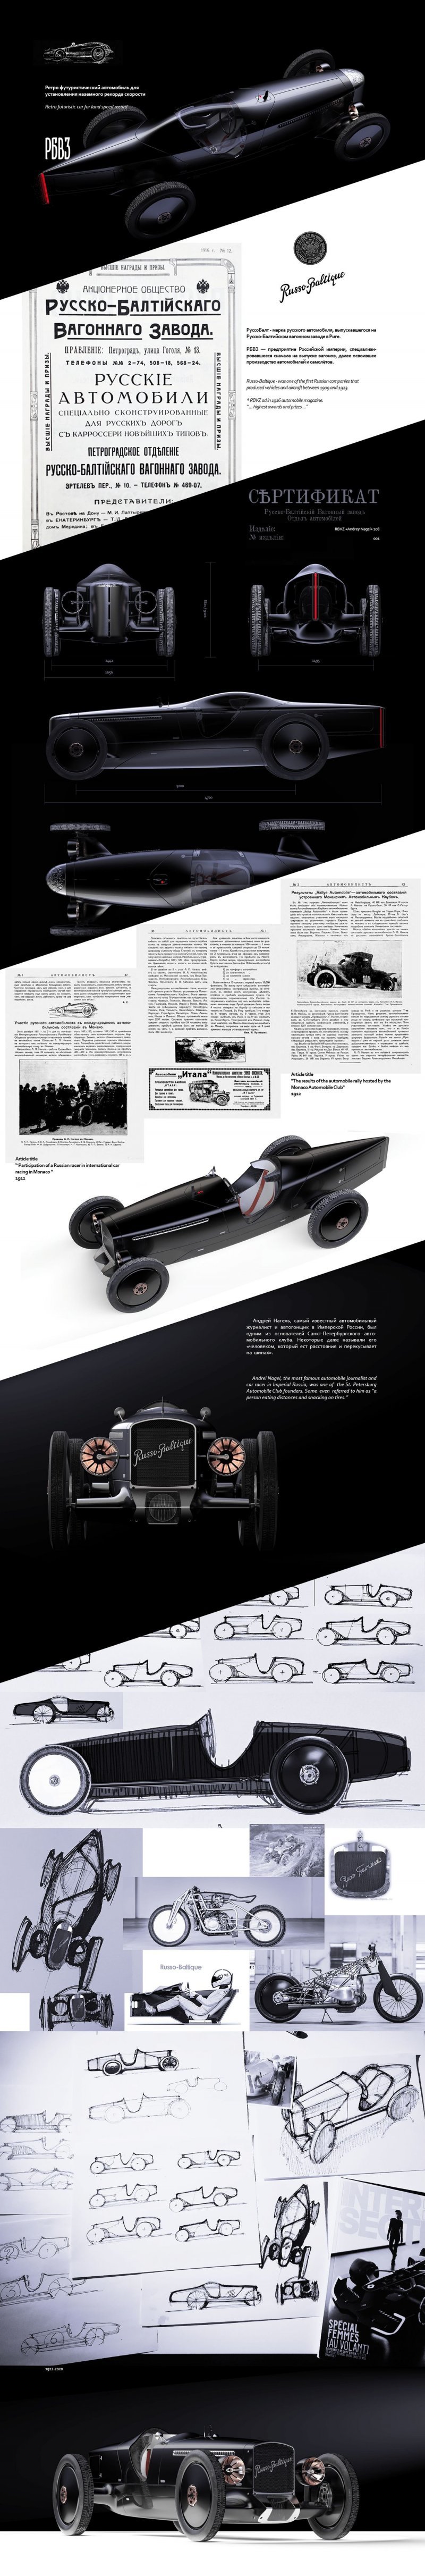 "Руссо-Балт" Andrey Nagel 108 — ретро-футуристический автомобиль для установления наземного рекорда скорости